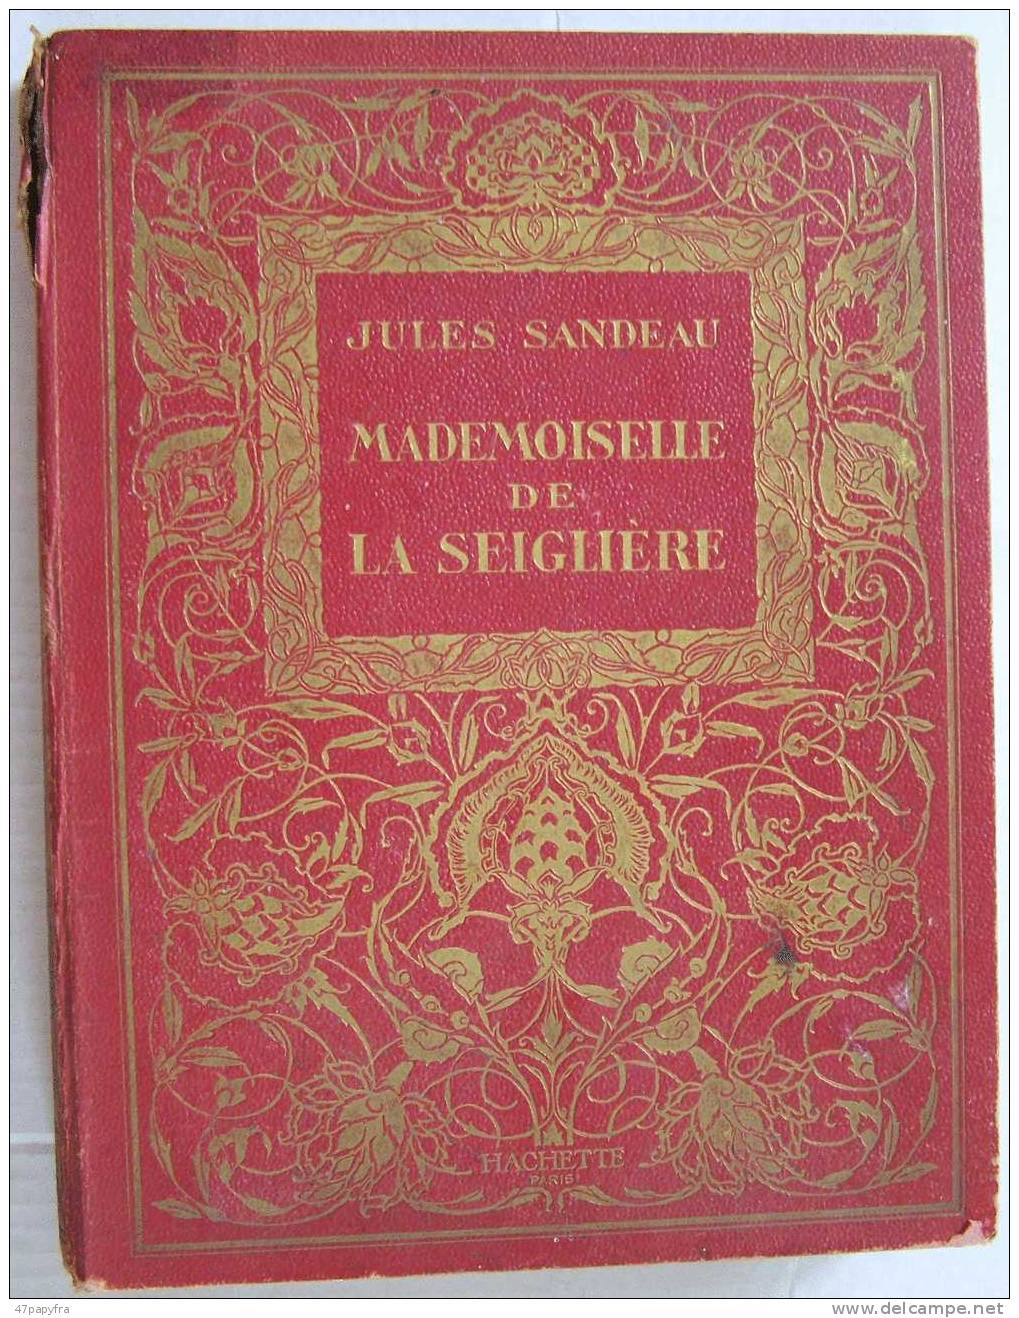 RARE ROMAN Brodard & Taupin Librairie Hachette  Melle DE LA SEIGLIERE Par JULES SANDEAU - Francese